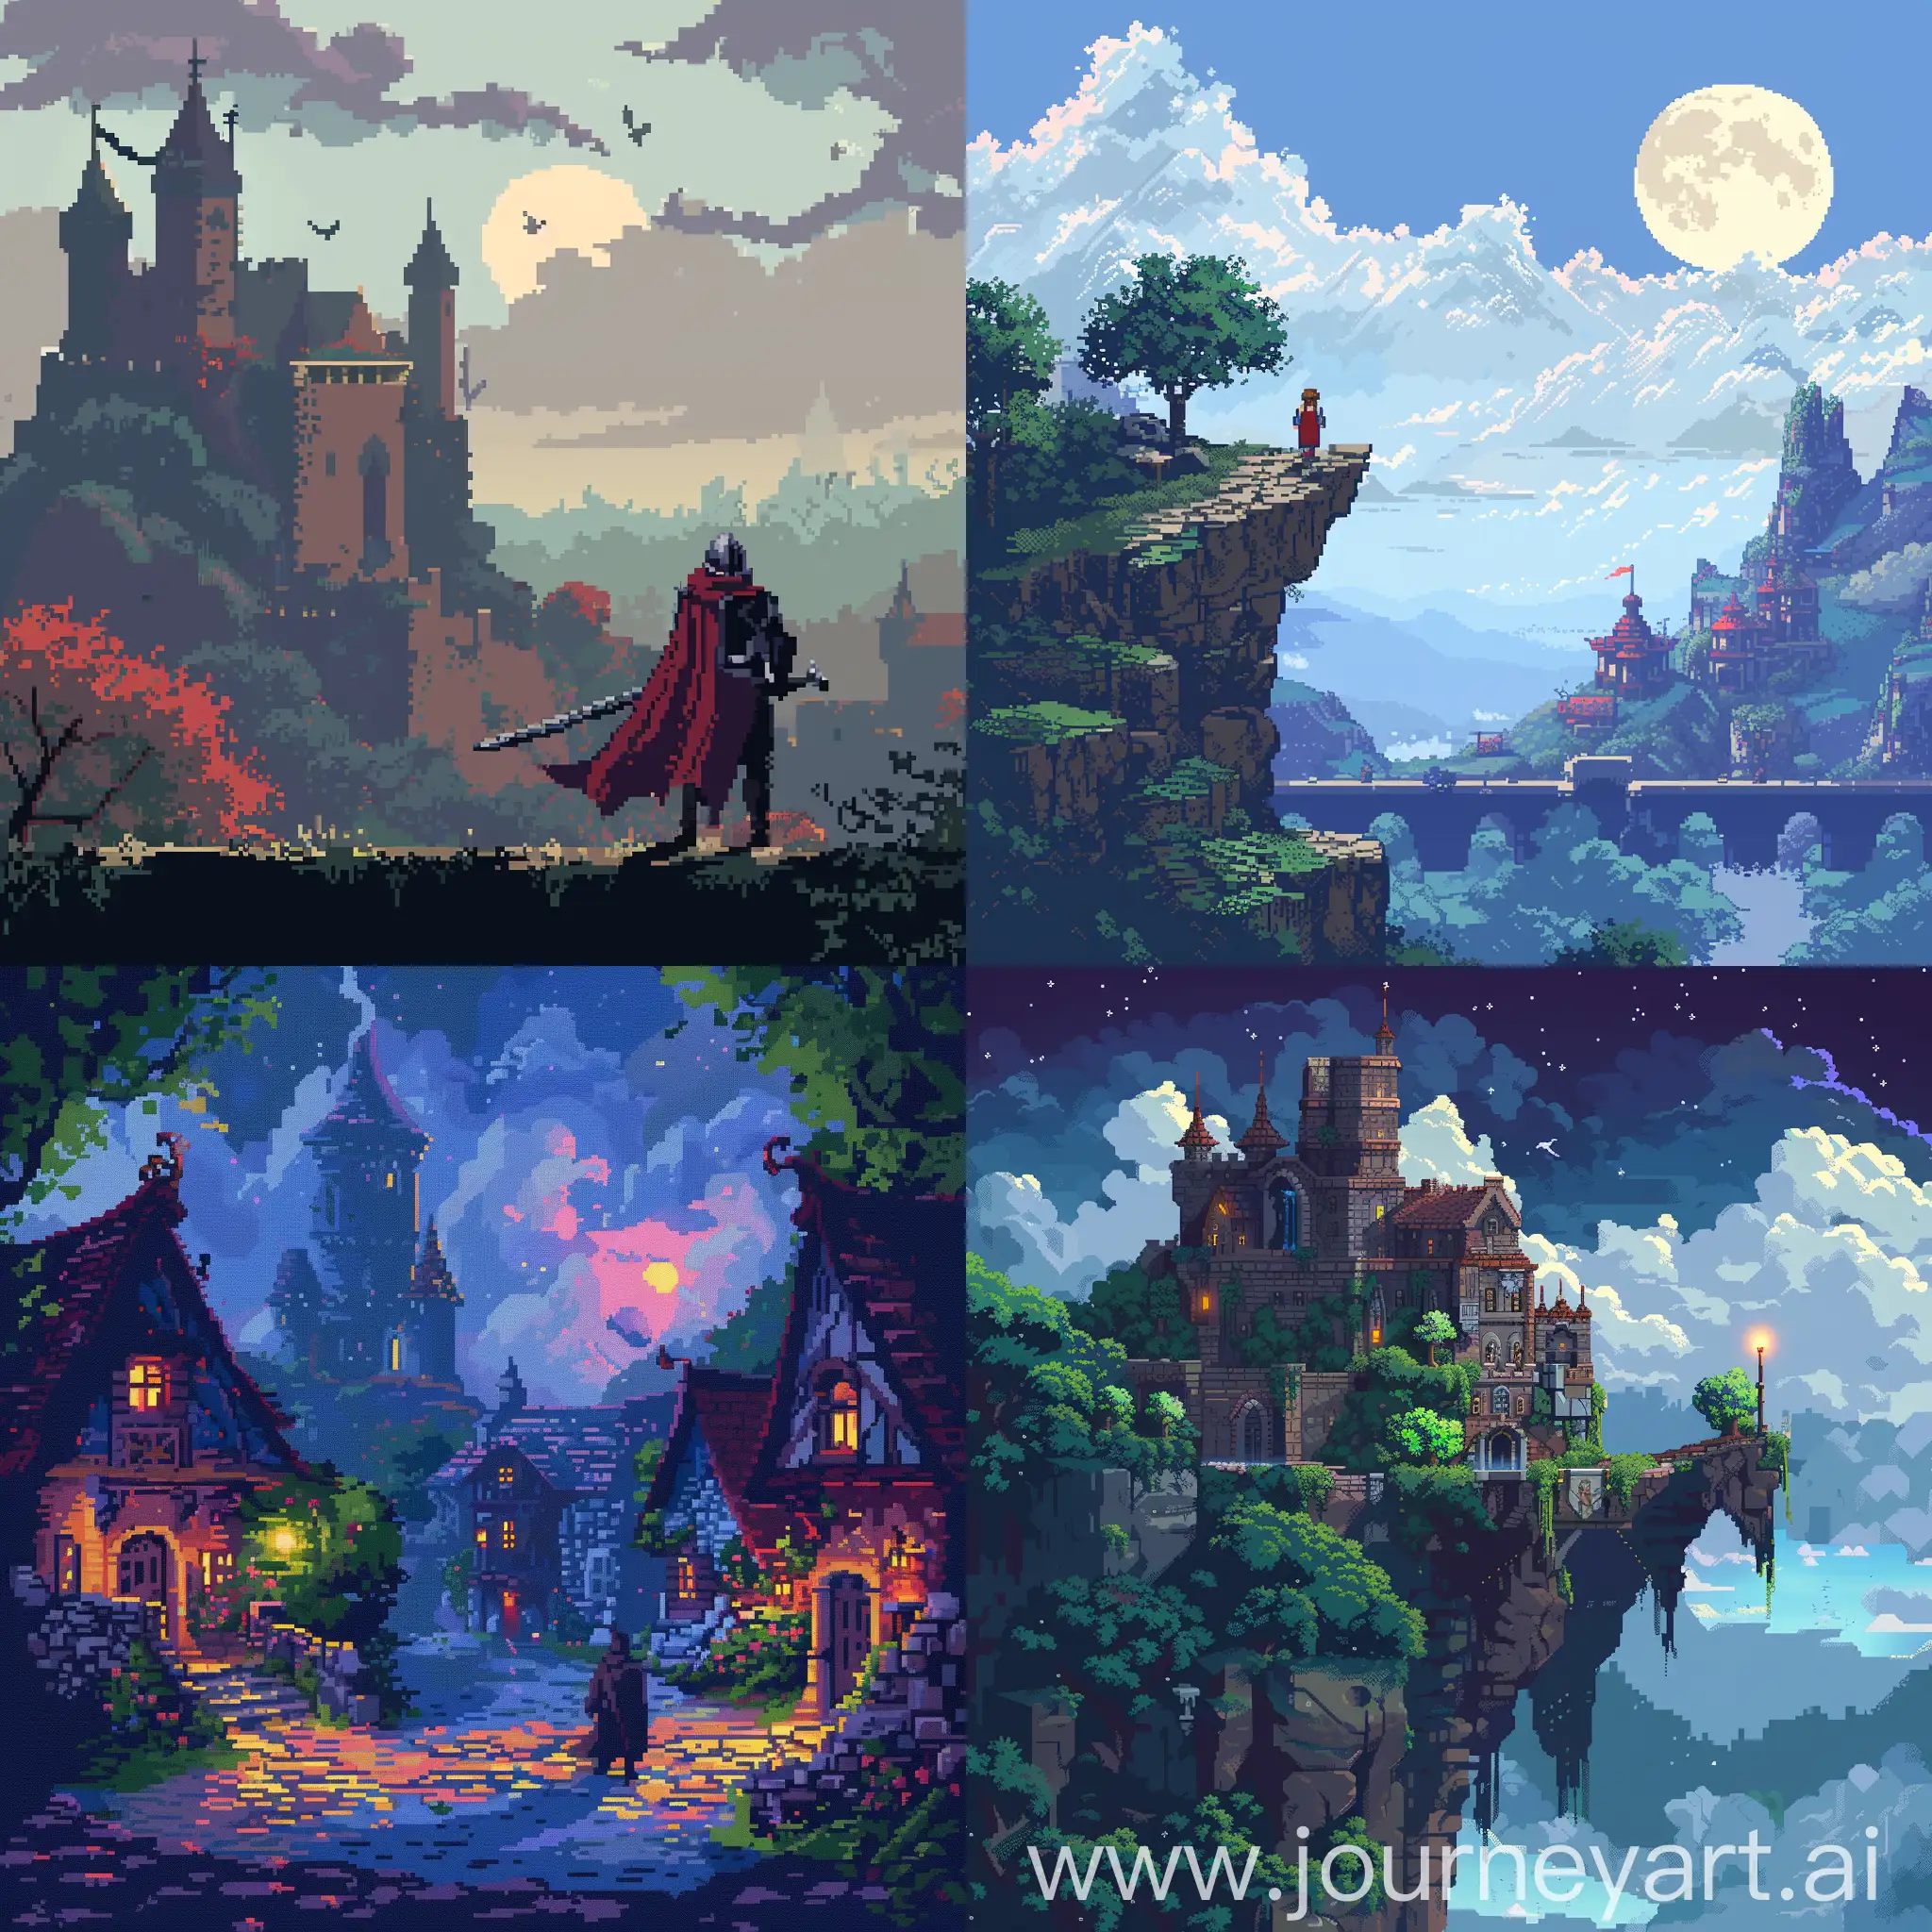 Pixelated fantasy adventures